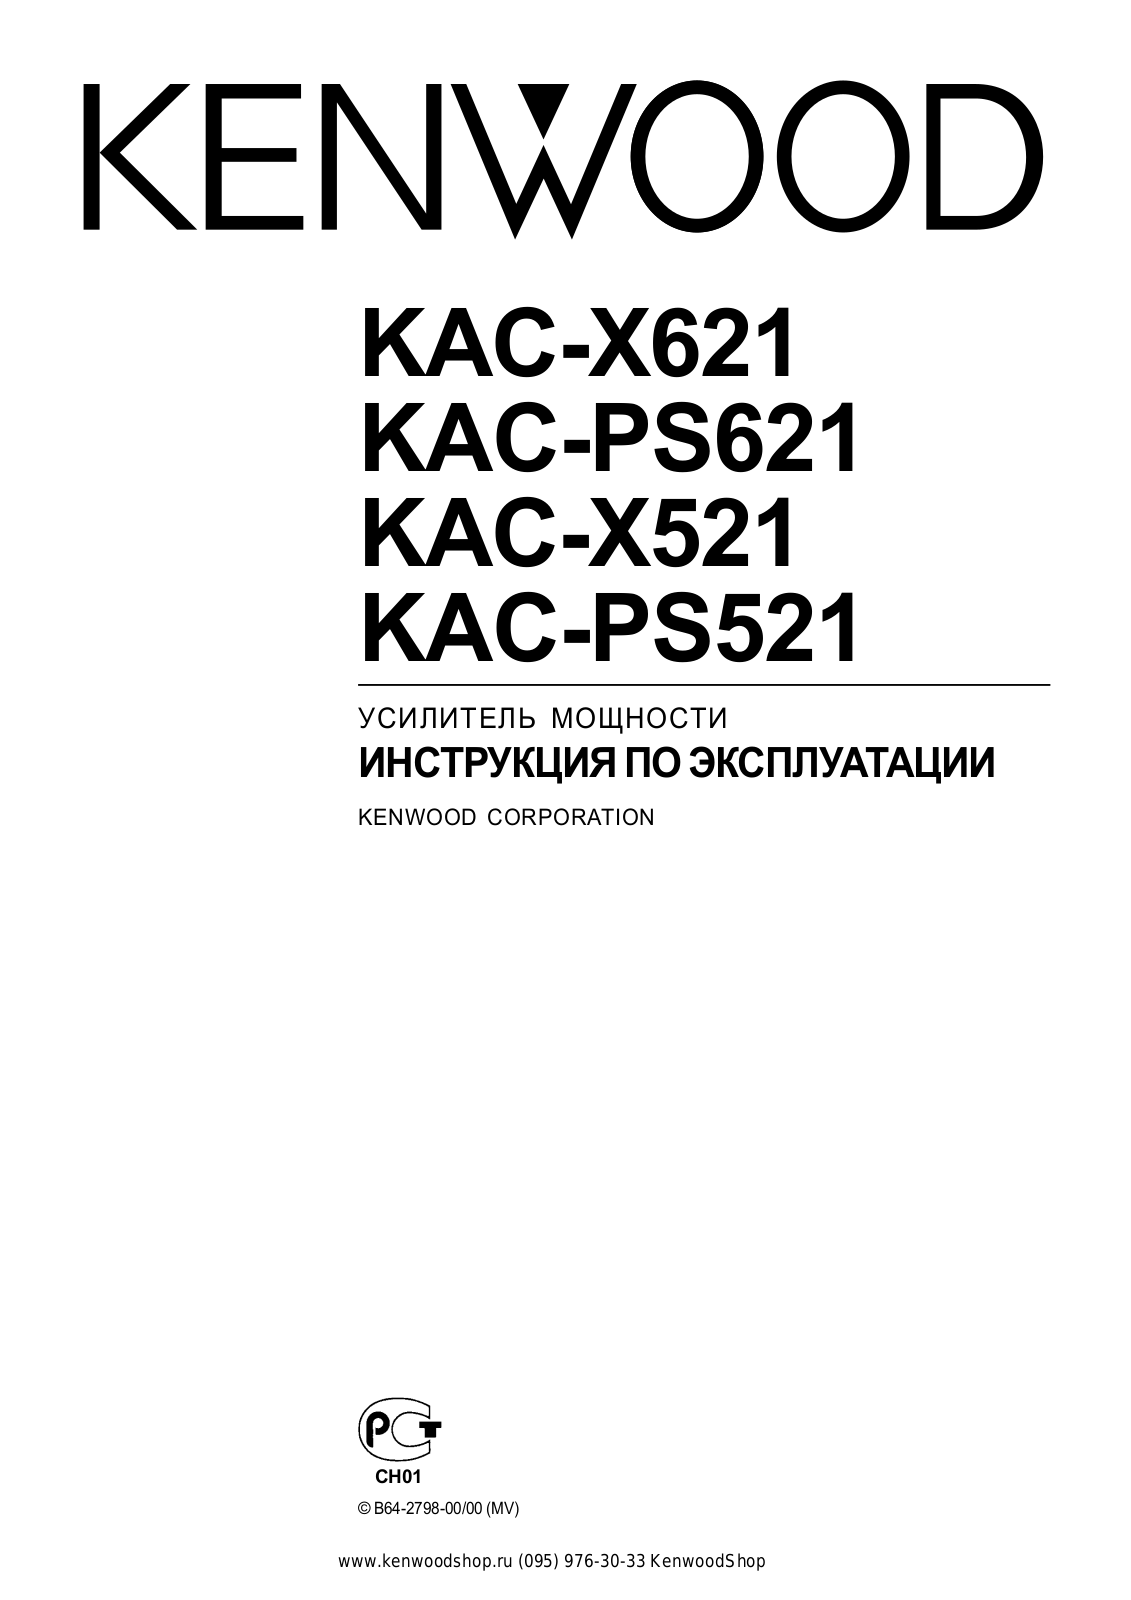 KENWOOD KAC-X521, KAC-X621 User Manual